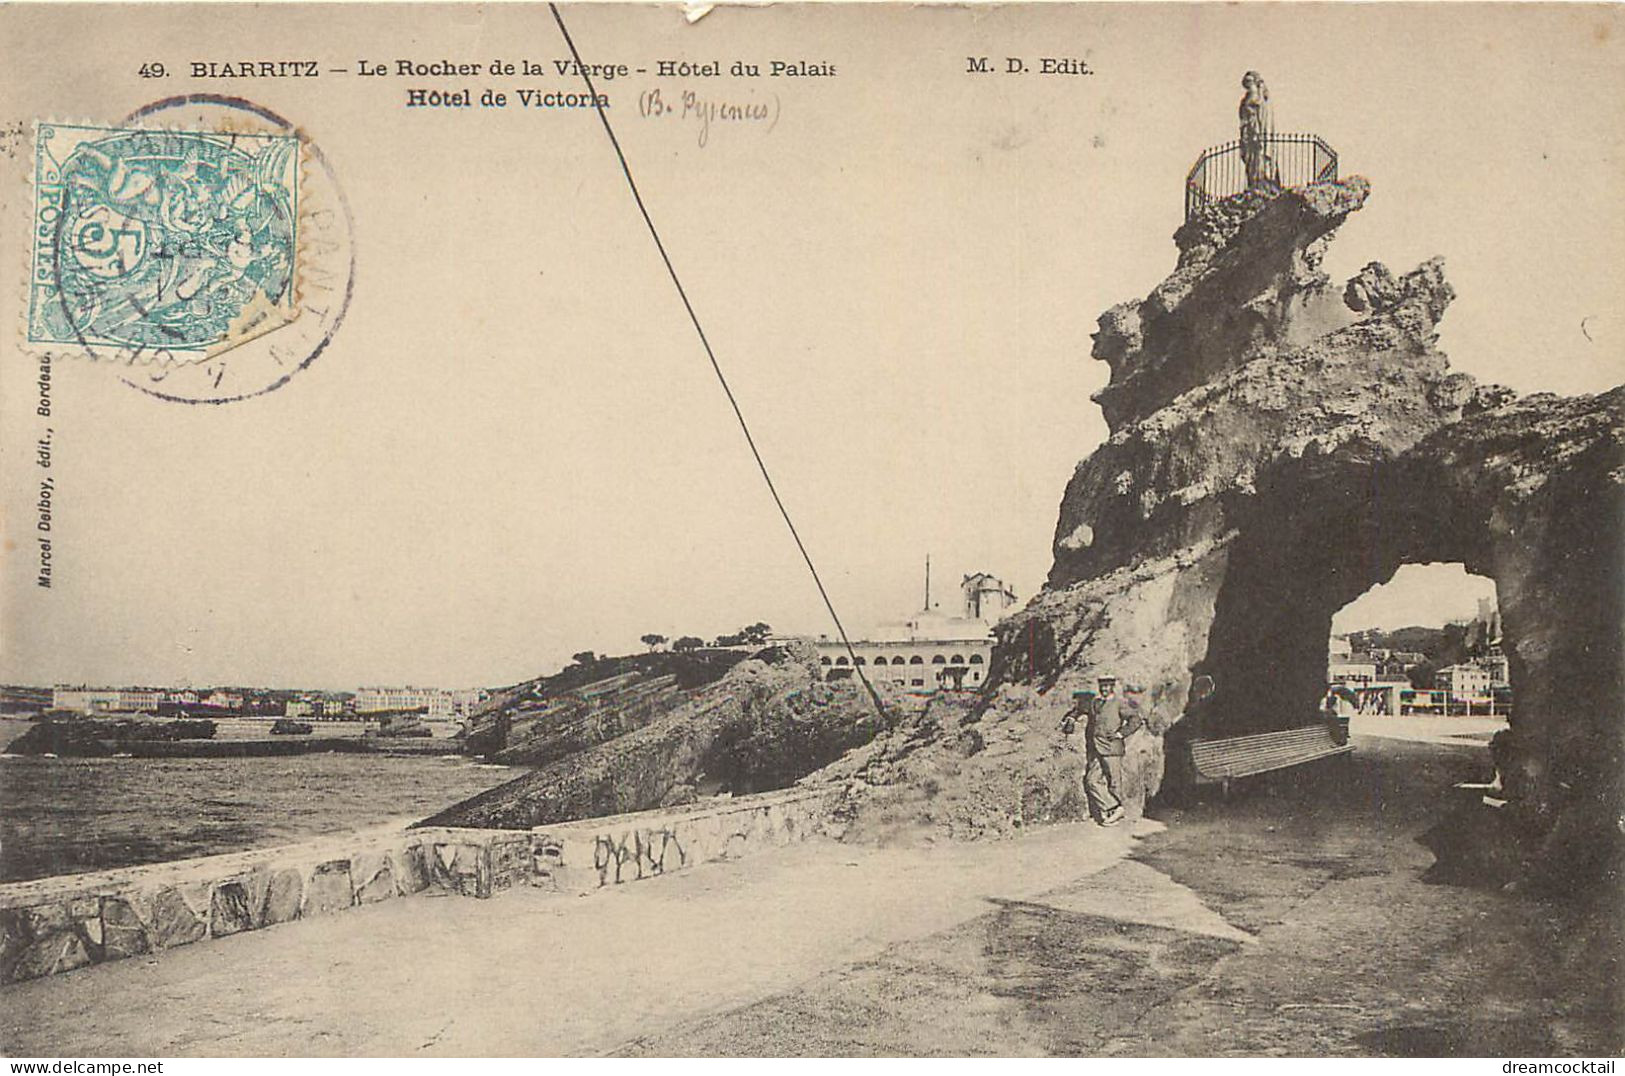 (S) Superbe LOT n°18 de 50 cartes postales anciennes Françaises régionalisme